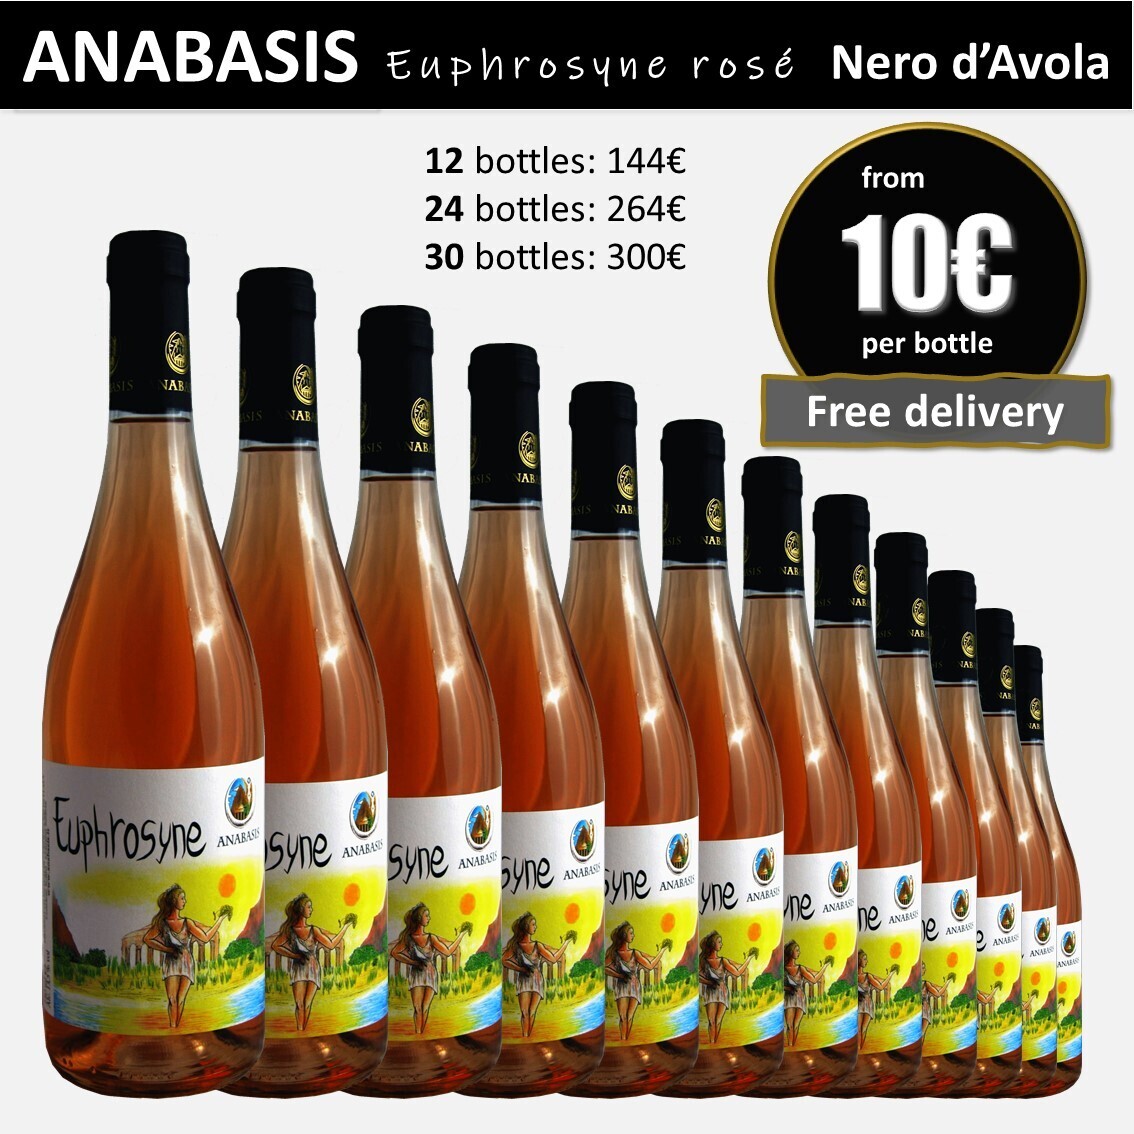 ANABASIS EUPHROSYNE Nero d'Avola rosè 12 bottles